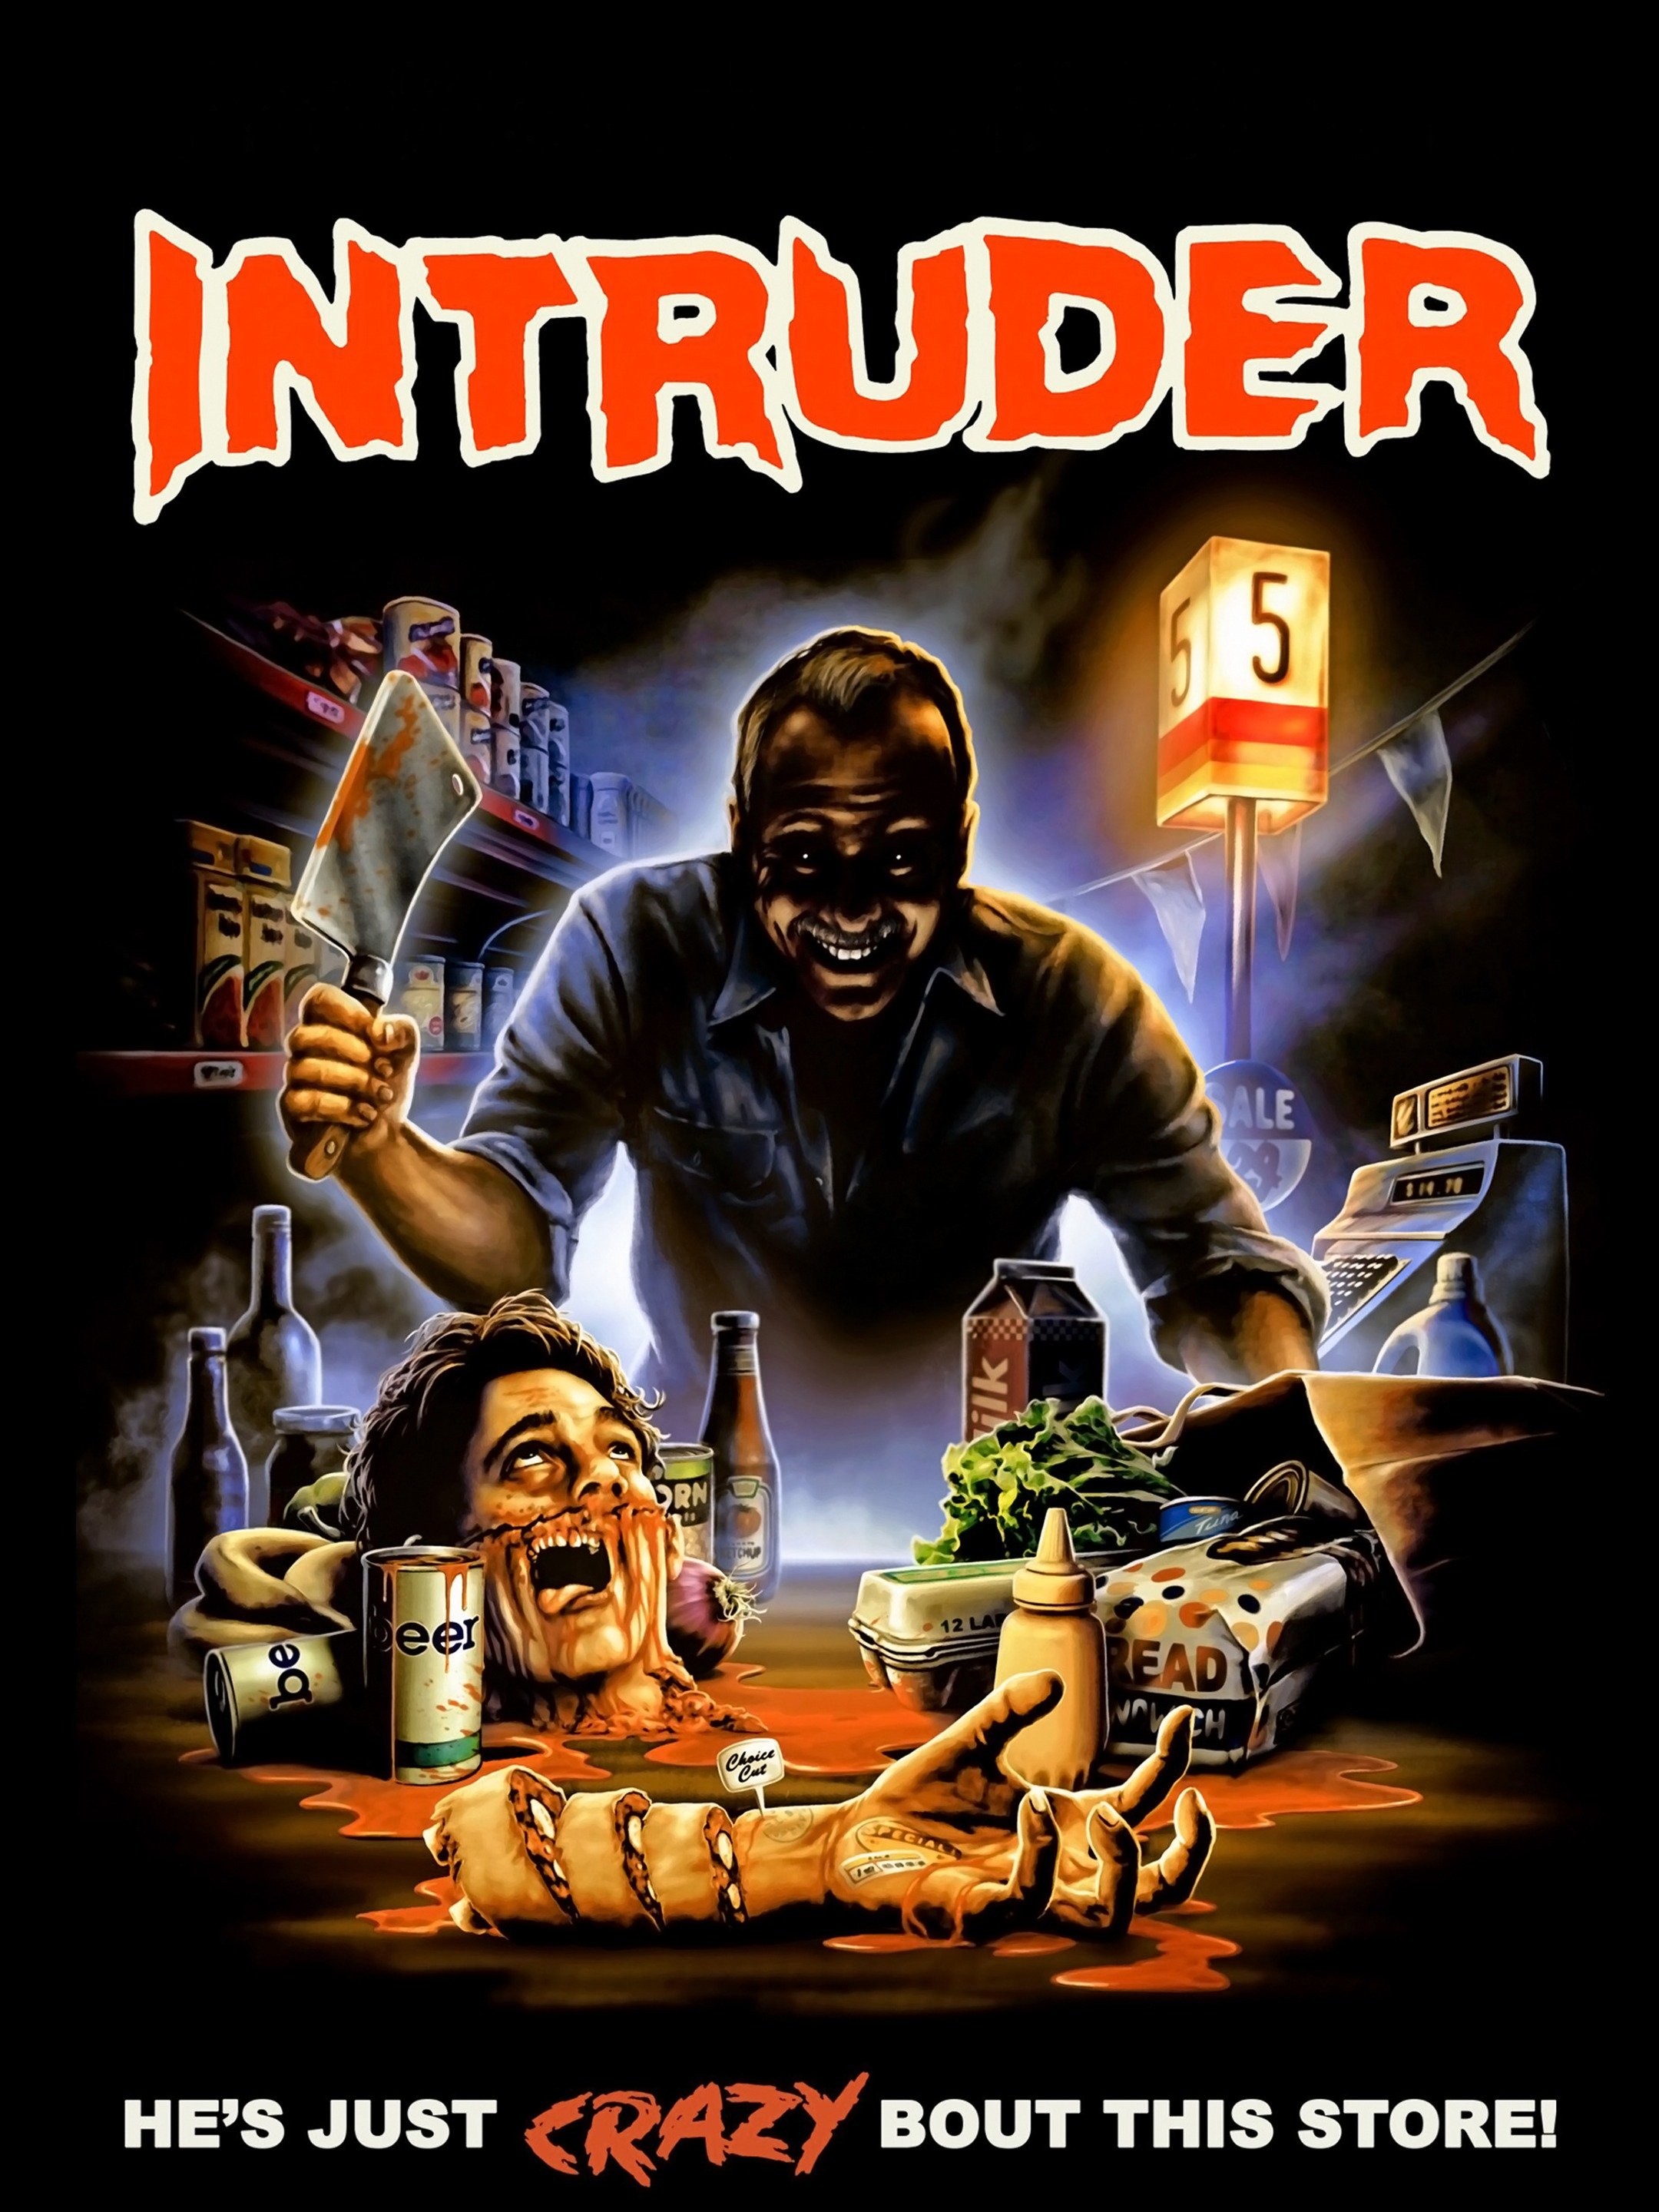 The Intruders (2017) - IMDb